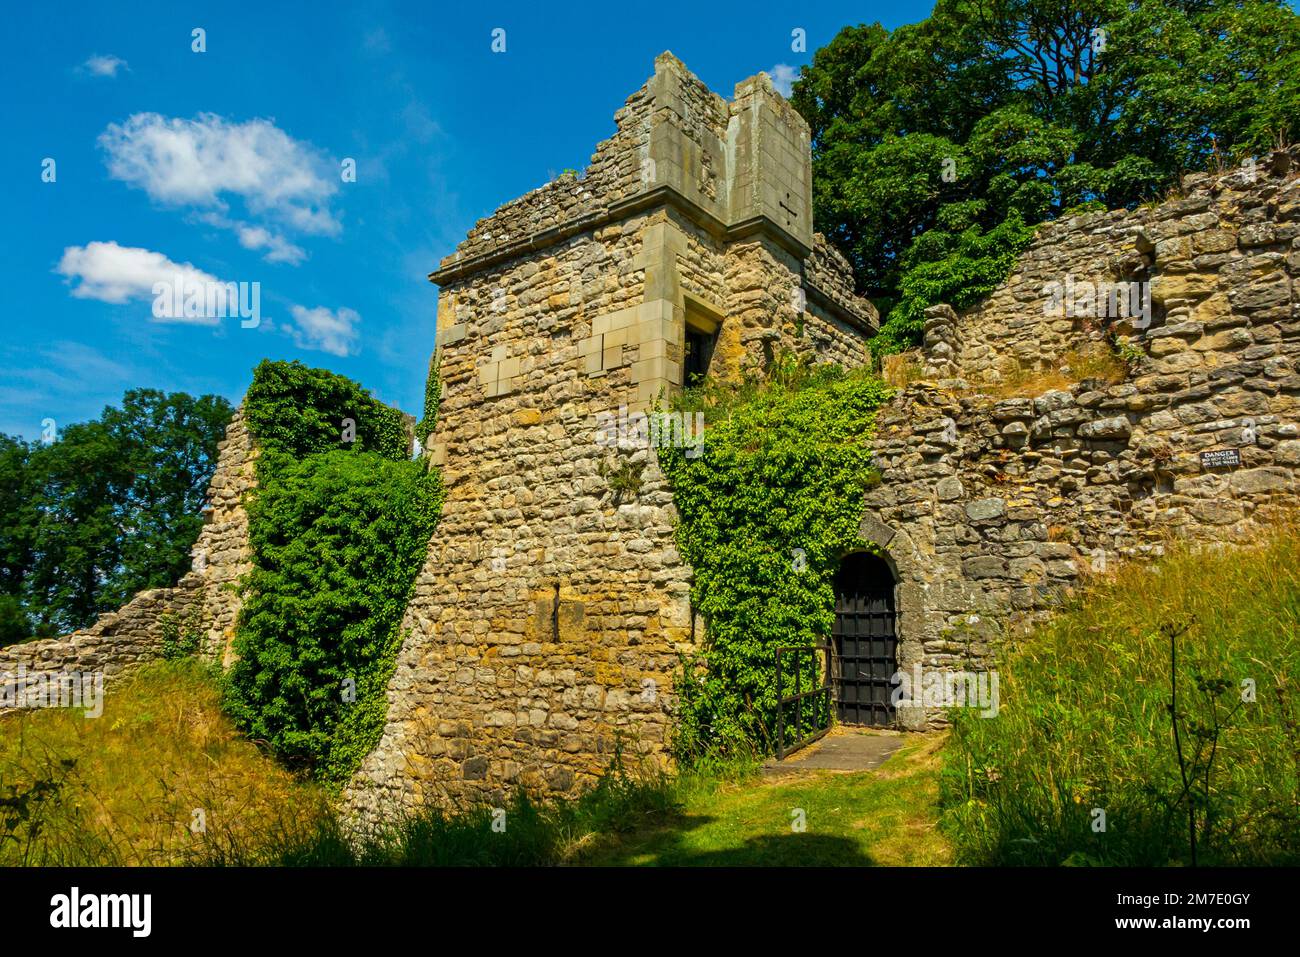 Überreste von Pickering Castle, einer Festung von motte und bailey in North Yorkshire England, Großbritannien, die ursprünglich von den Normannen im Jahr 1070 erbaut wurde. Stockfoto